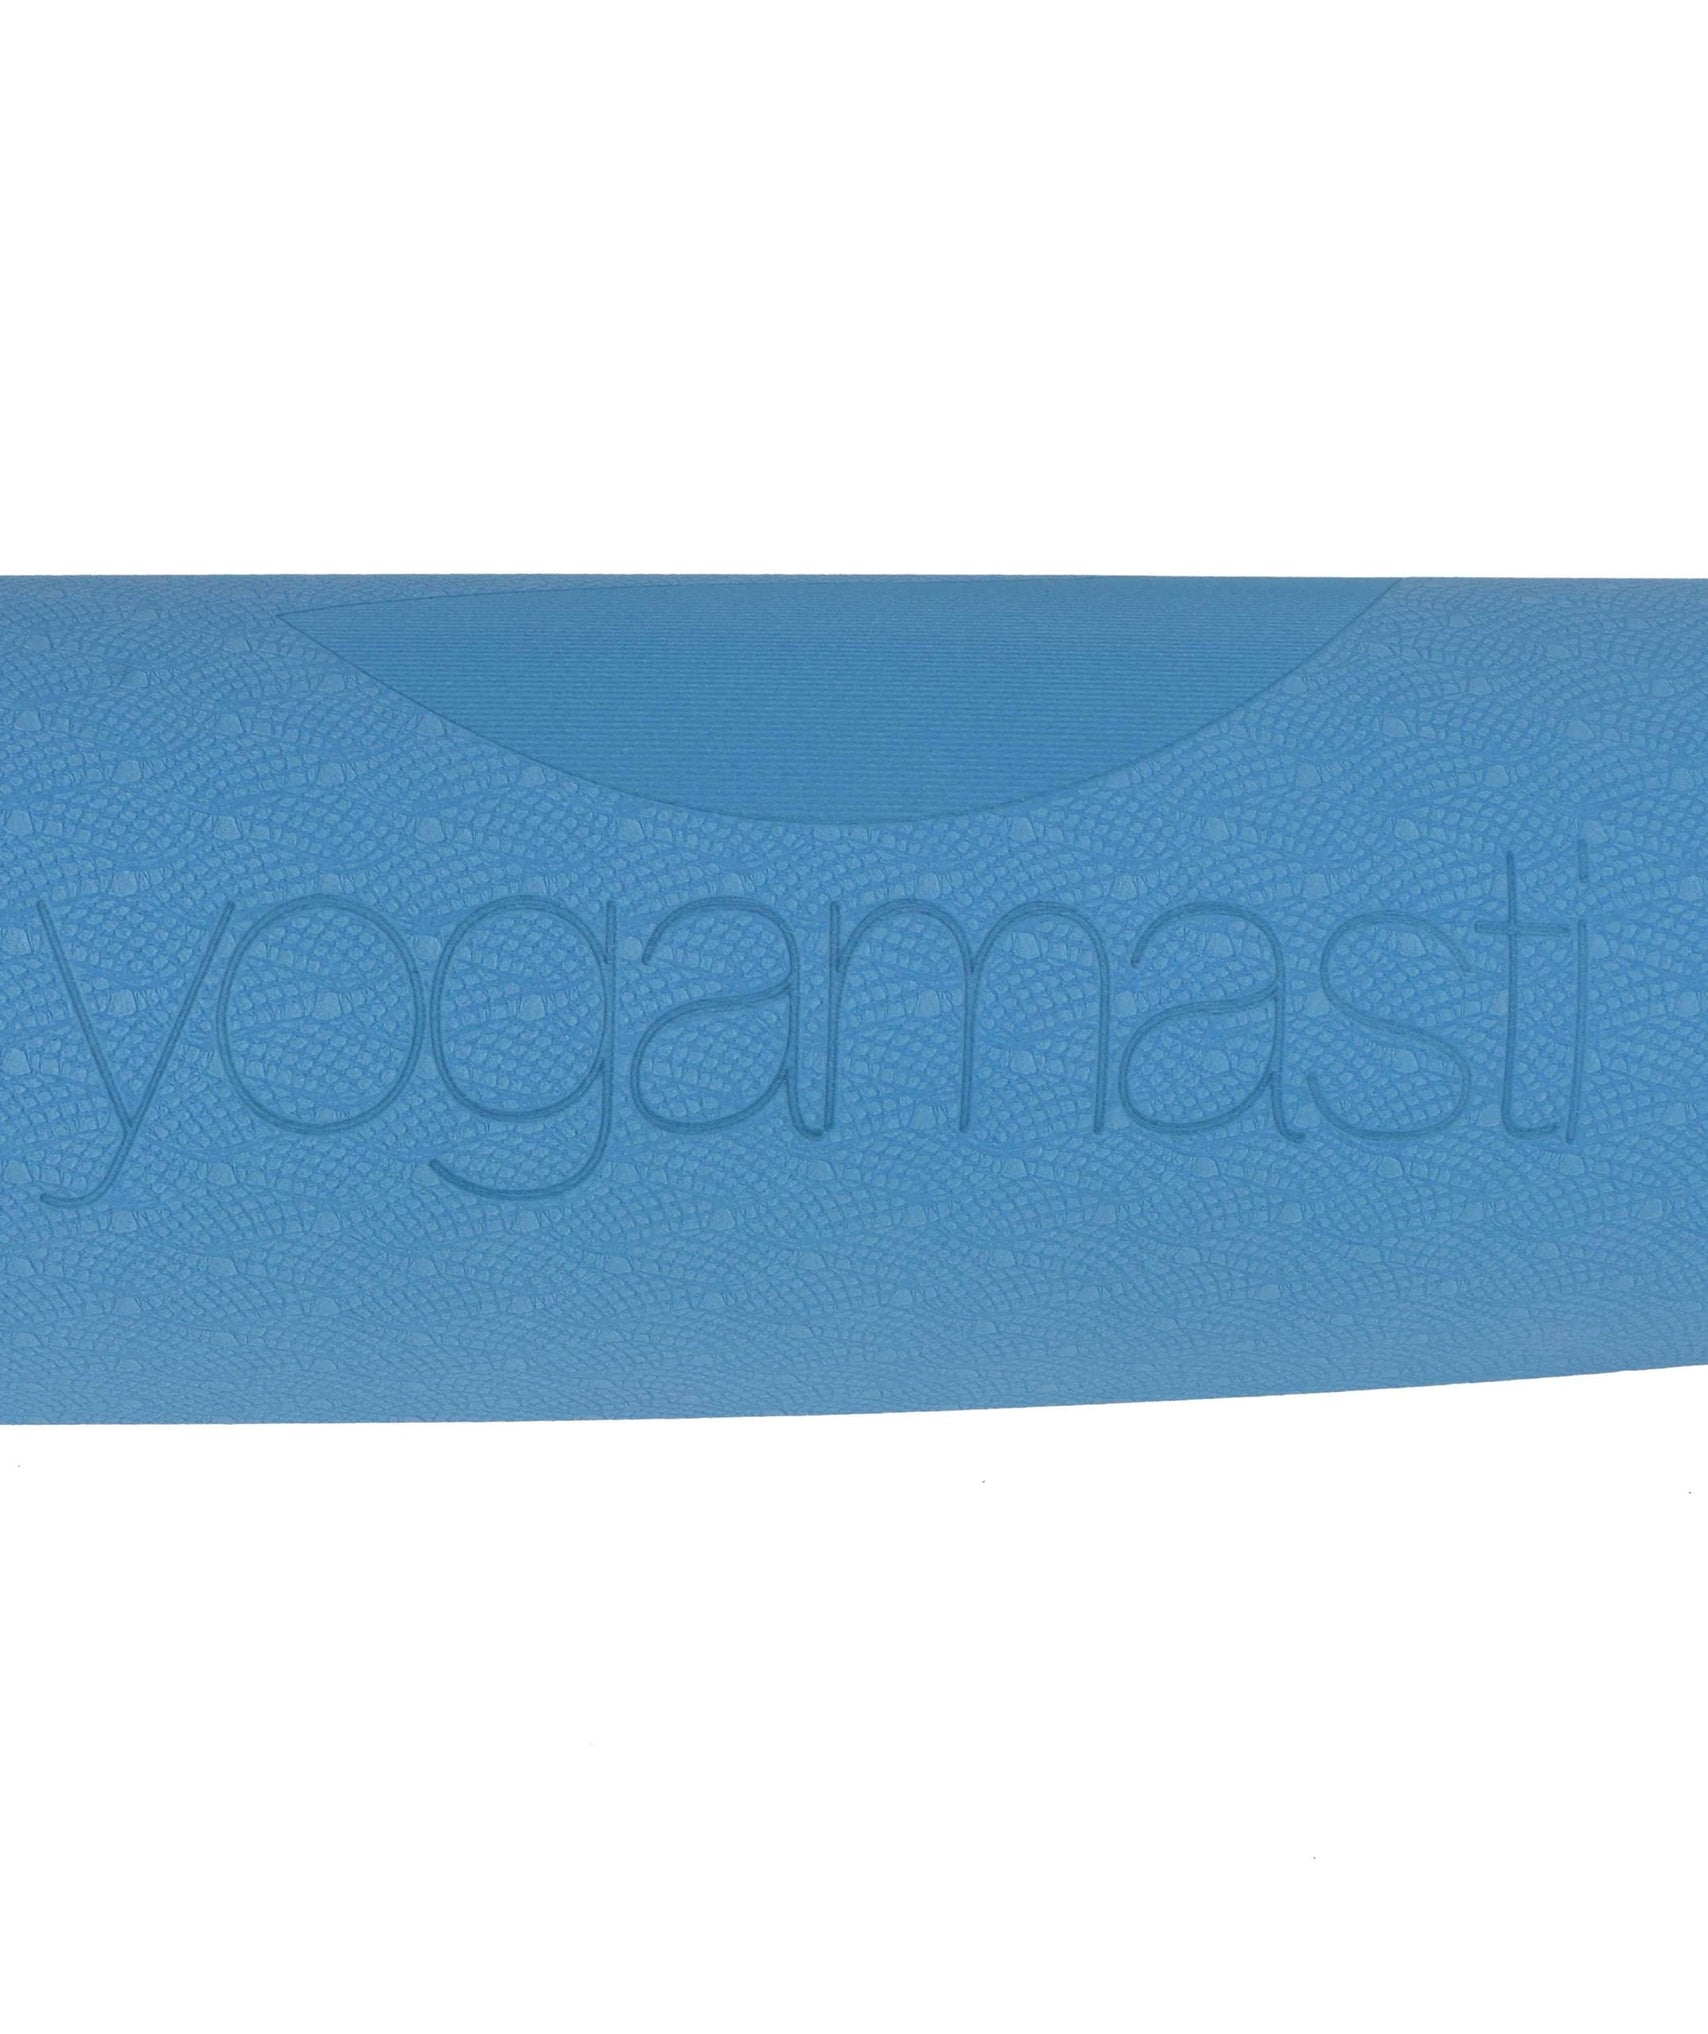 Yogamasti Sticky Yoga Mat - Travel Yoga Mat, Blue